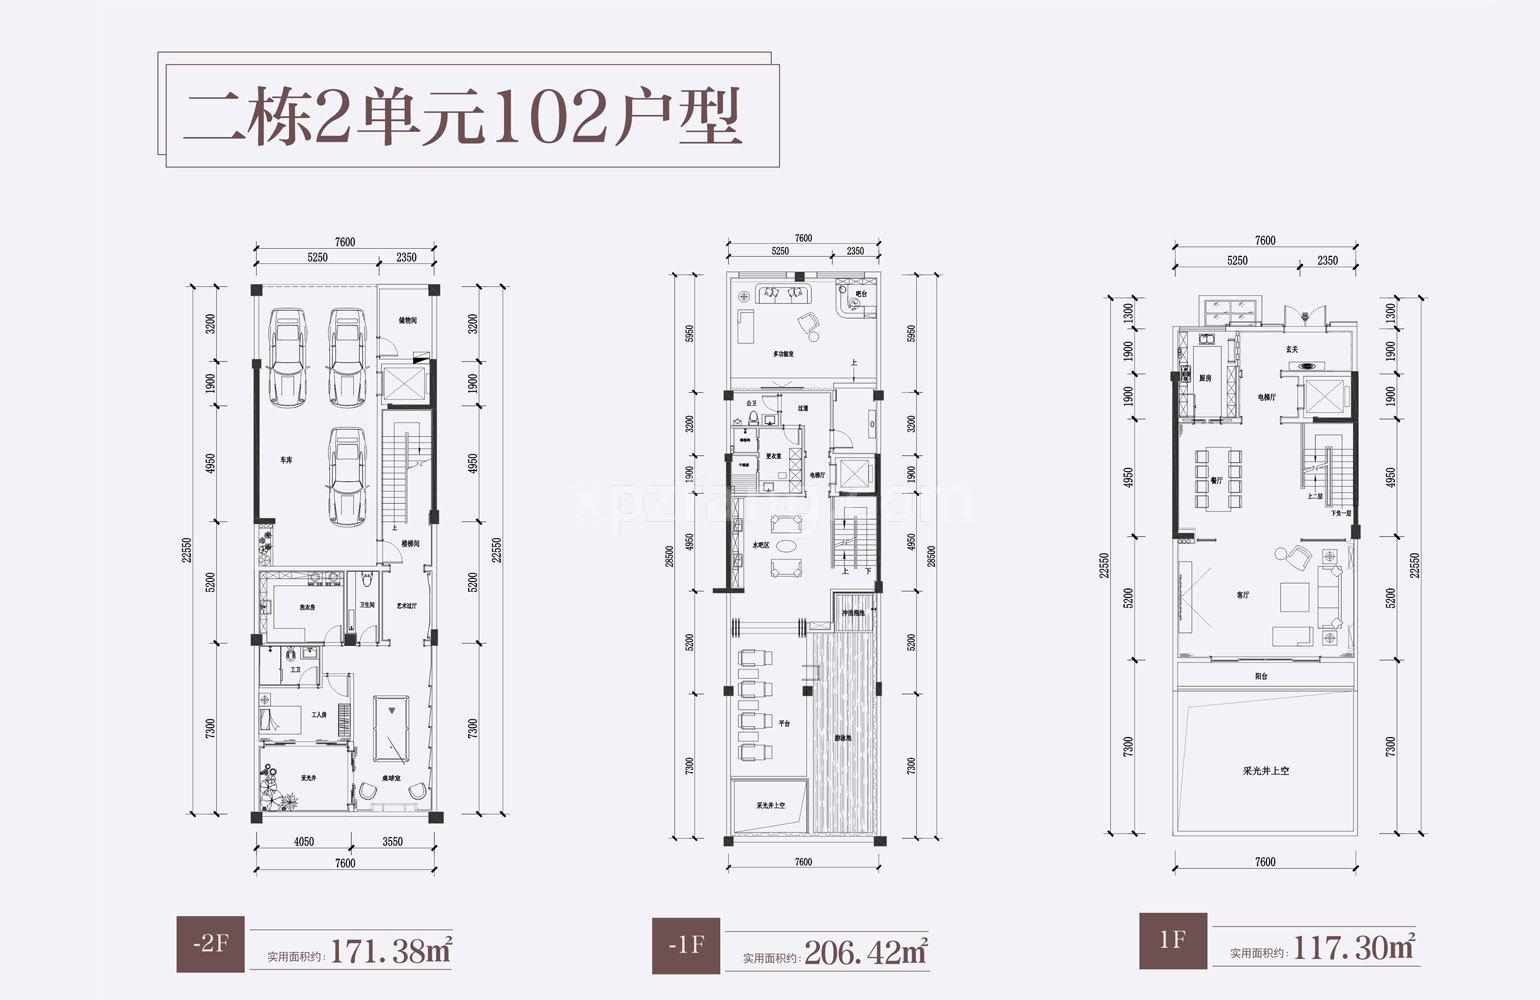 颐景山庄 别墅102户型-2F、-1F、1F 实用面积831.36㎡